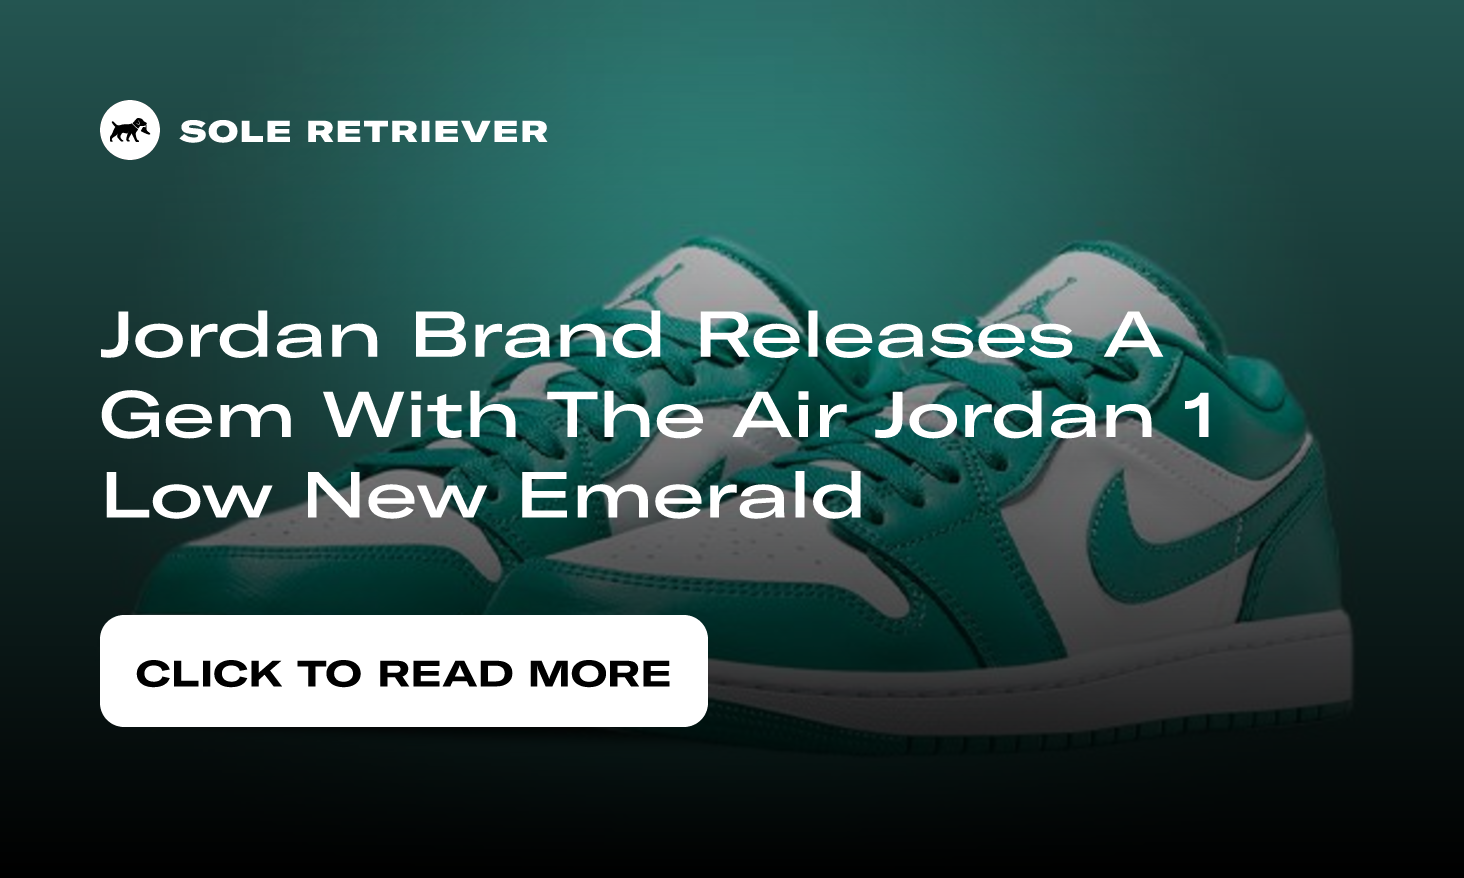 The Air Jordan 1 Low New Emerald Drops September 15th - JustFreshKicks